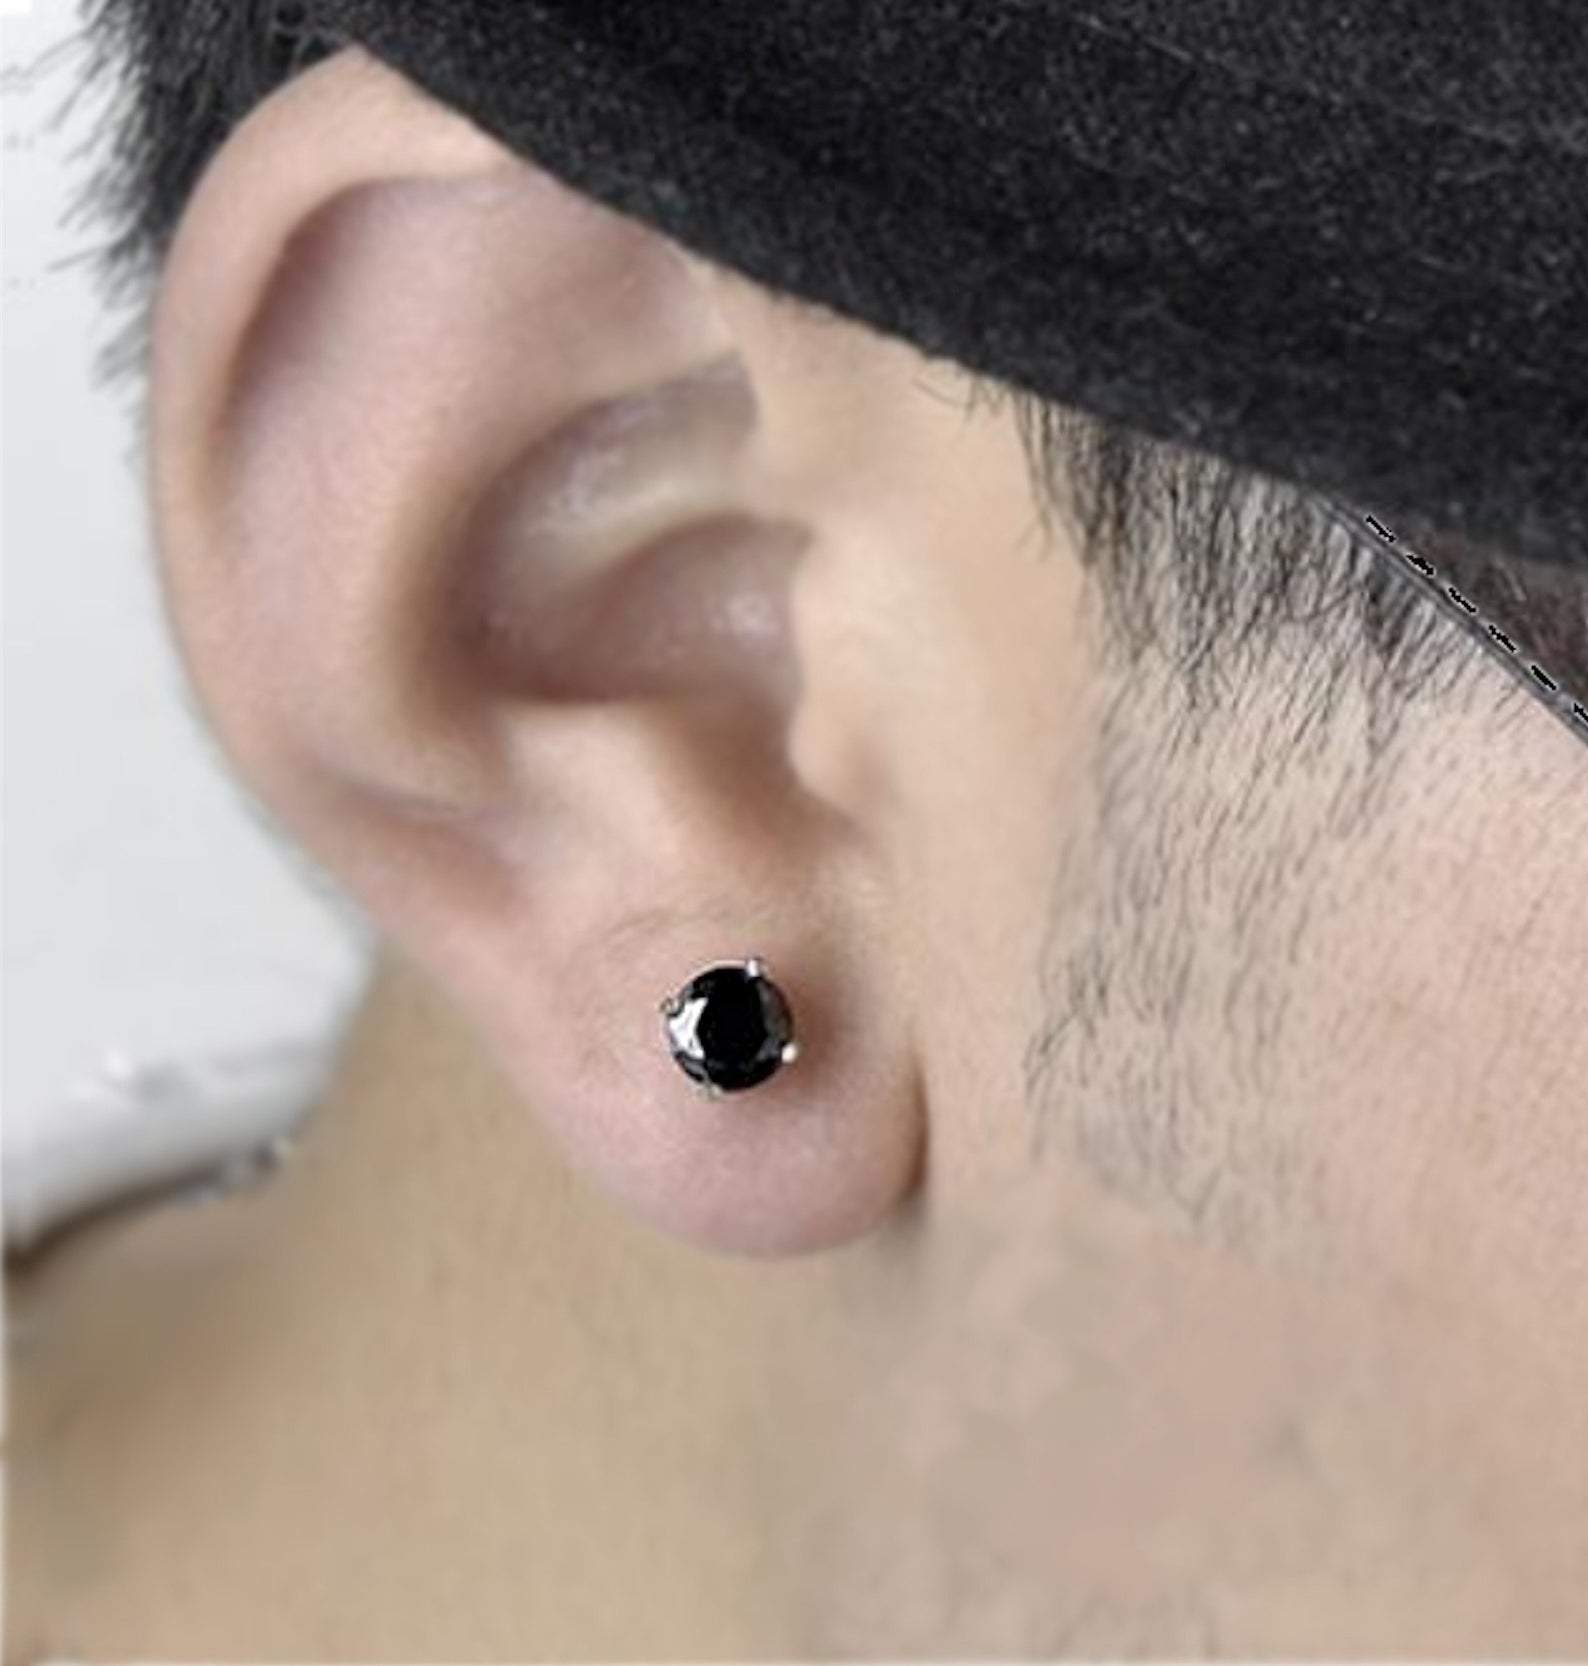 earrings studs for men